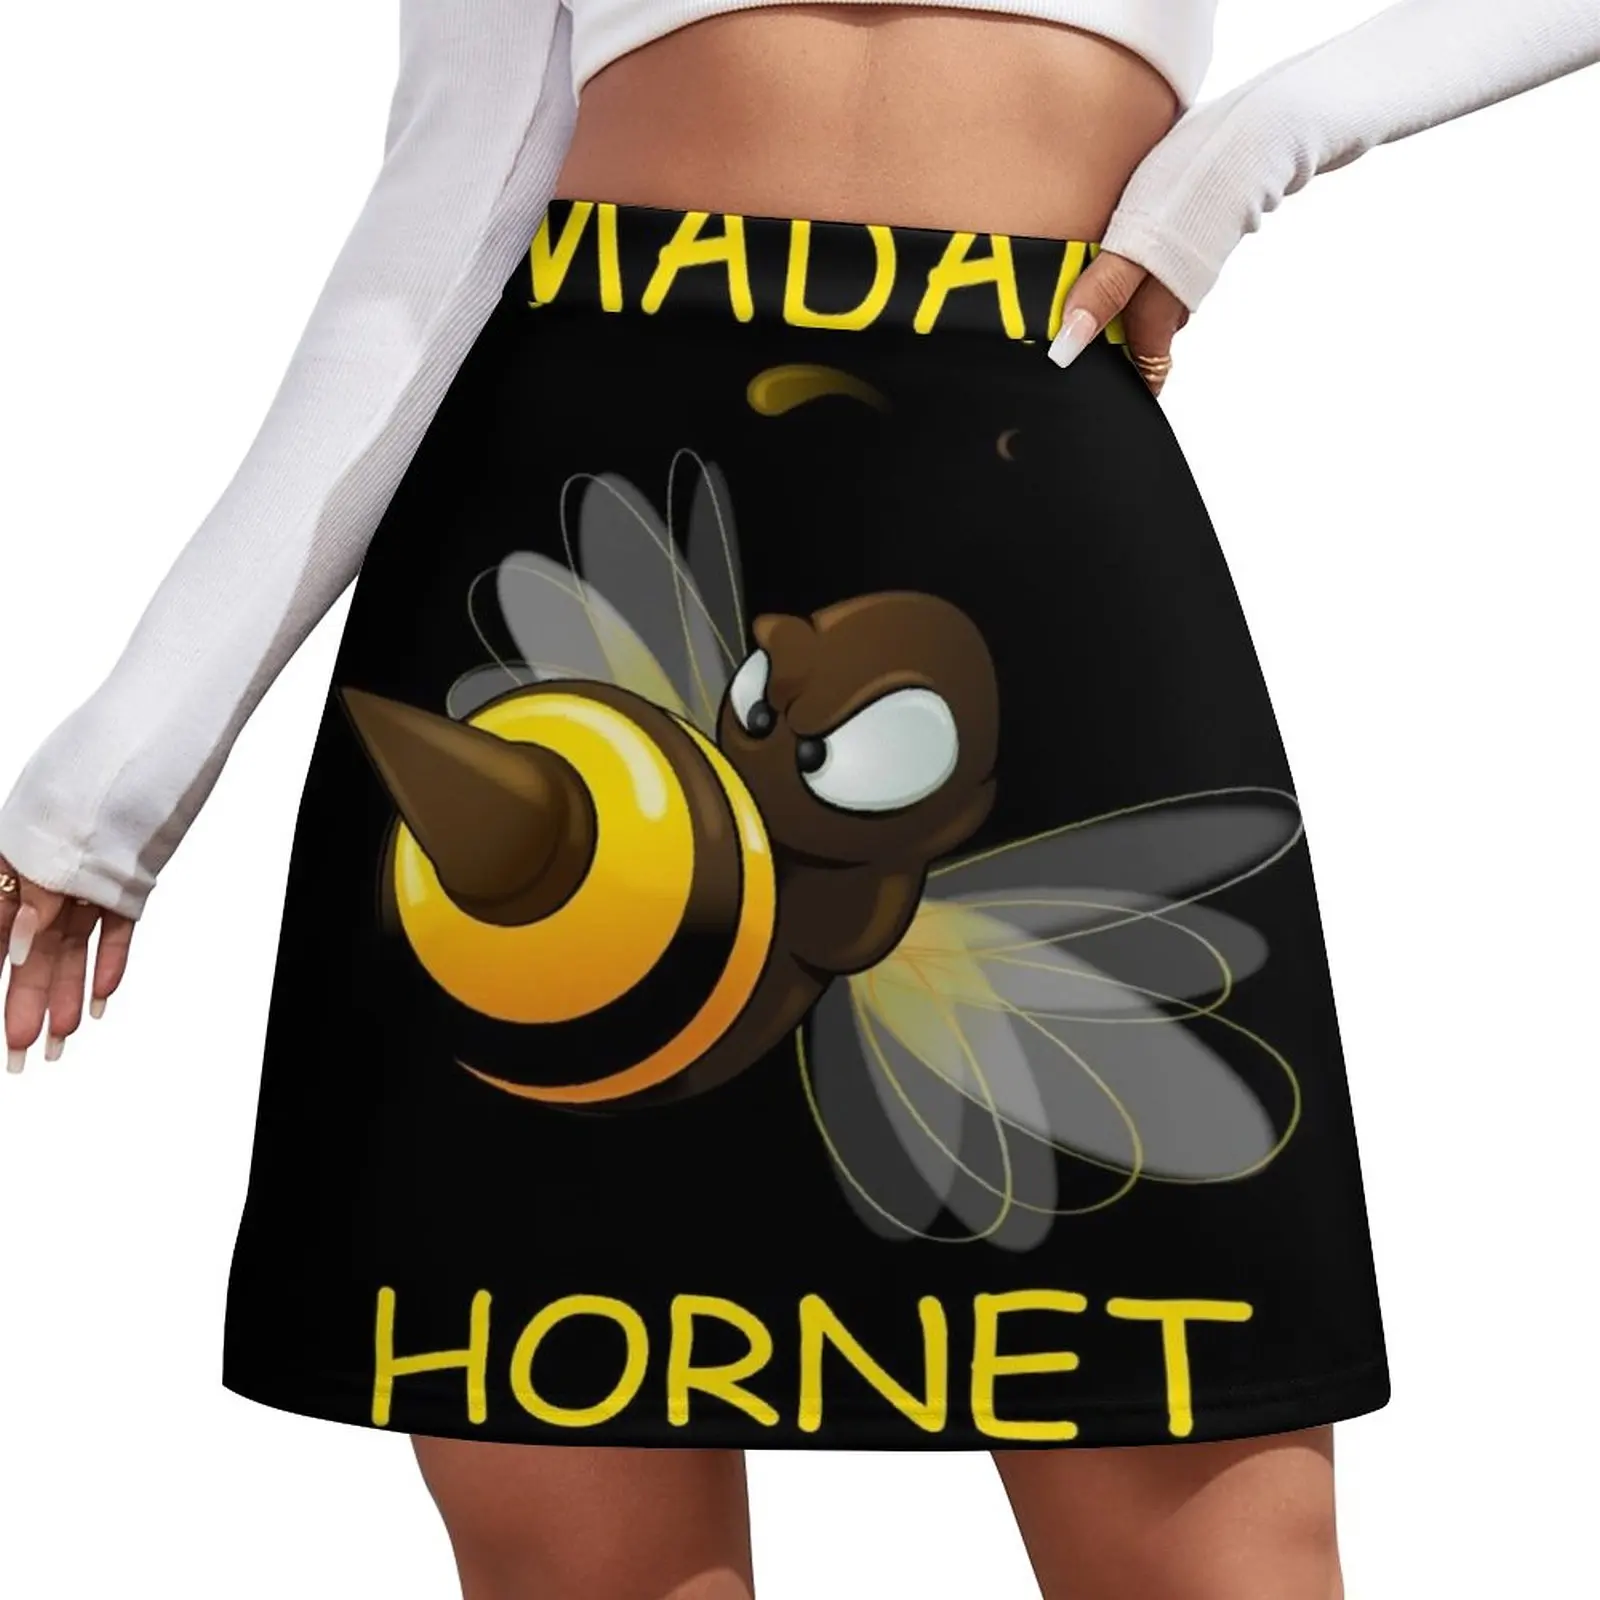 Madam Hornet Mini Skirt japanese style short skirt for women korean clothes ladies